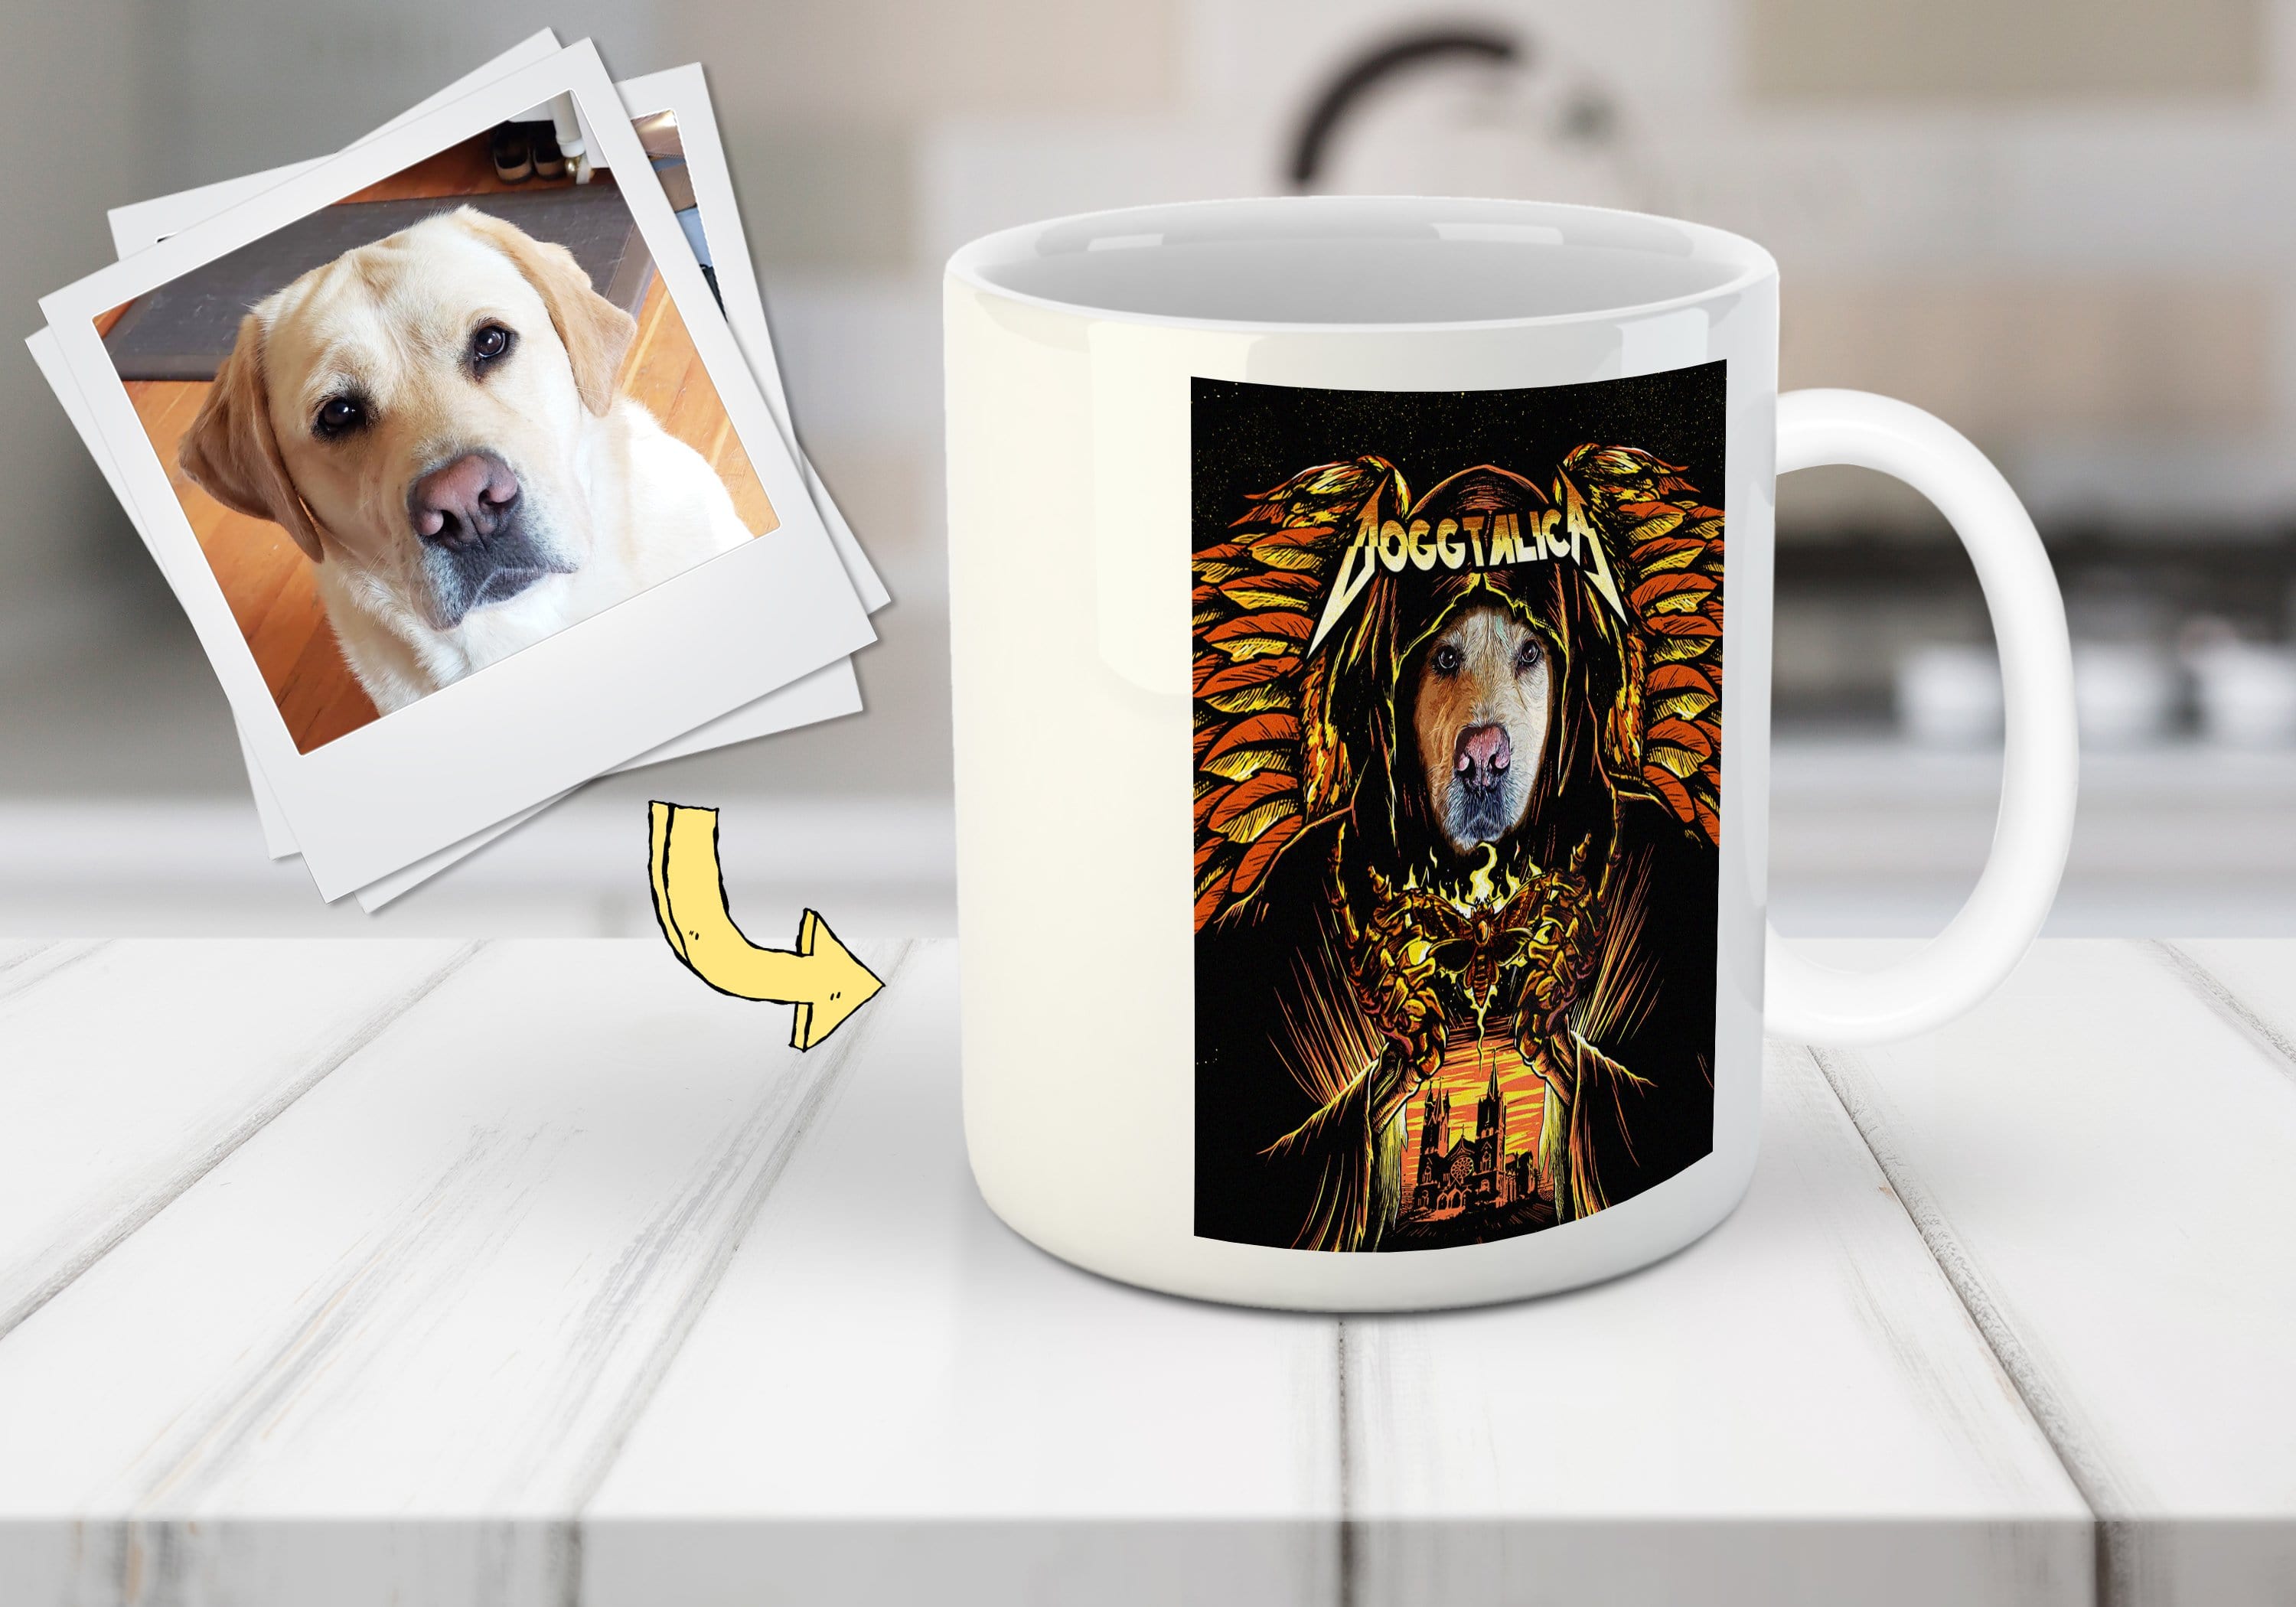 &#39;Doggtalica&#39; Personalized Mug